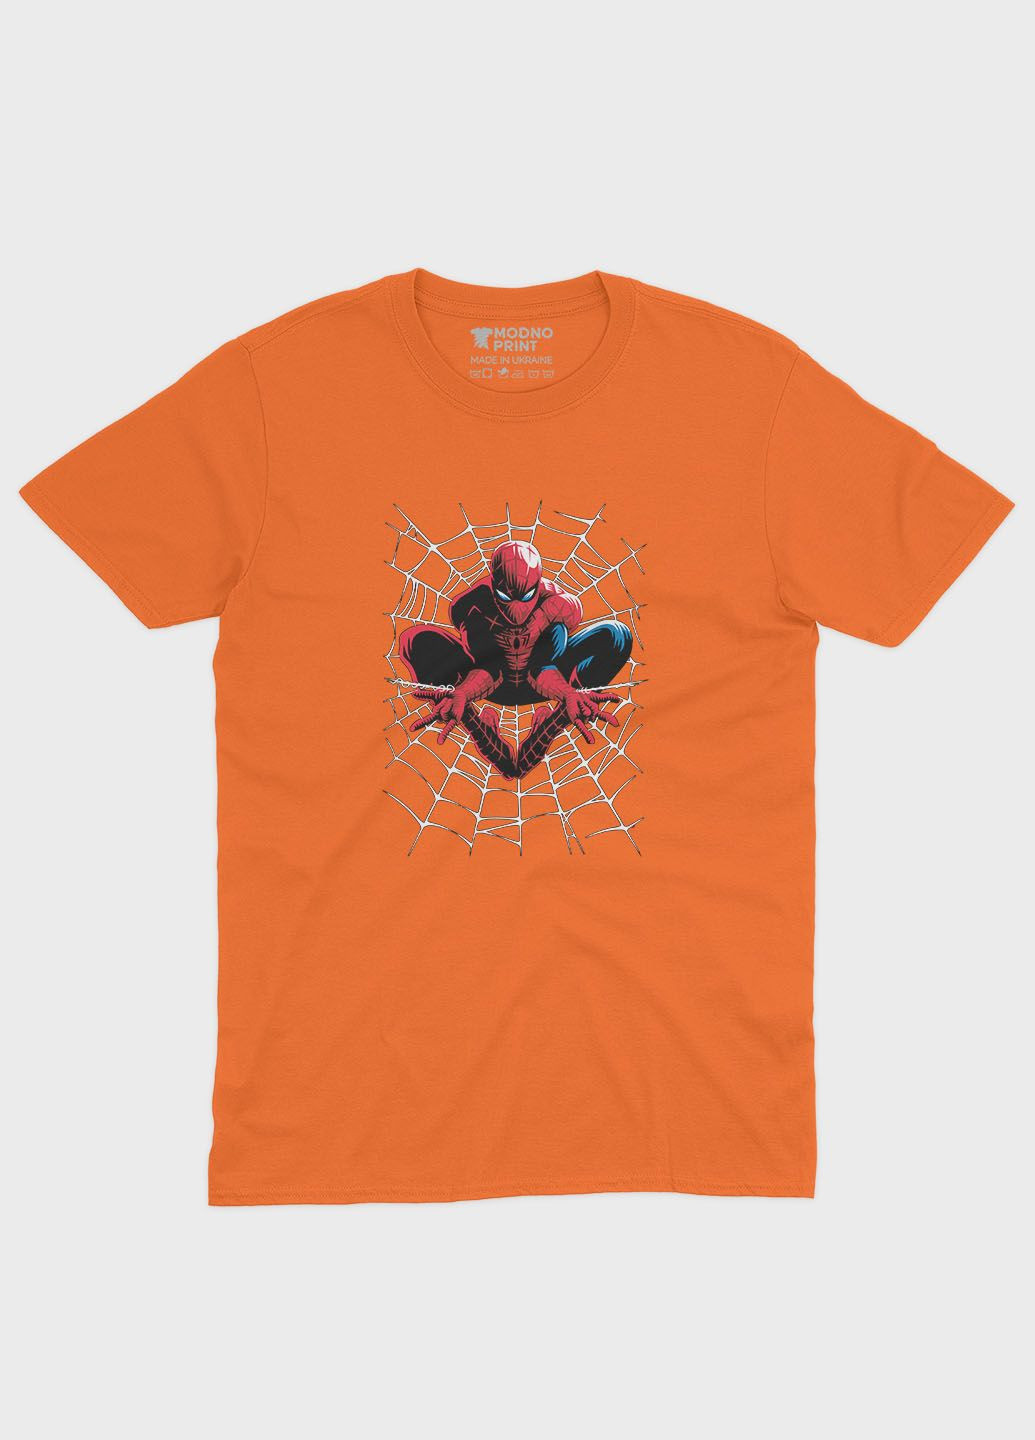 Помаранчева демісезонна футболка для хлопчика з принтом супергероя - людина-павук (ts001-1-ora-006-014-064-b) Modno